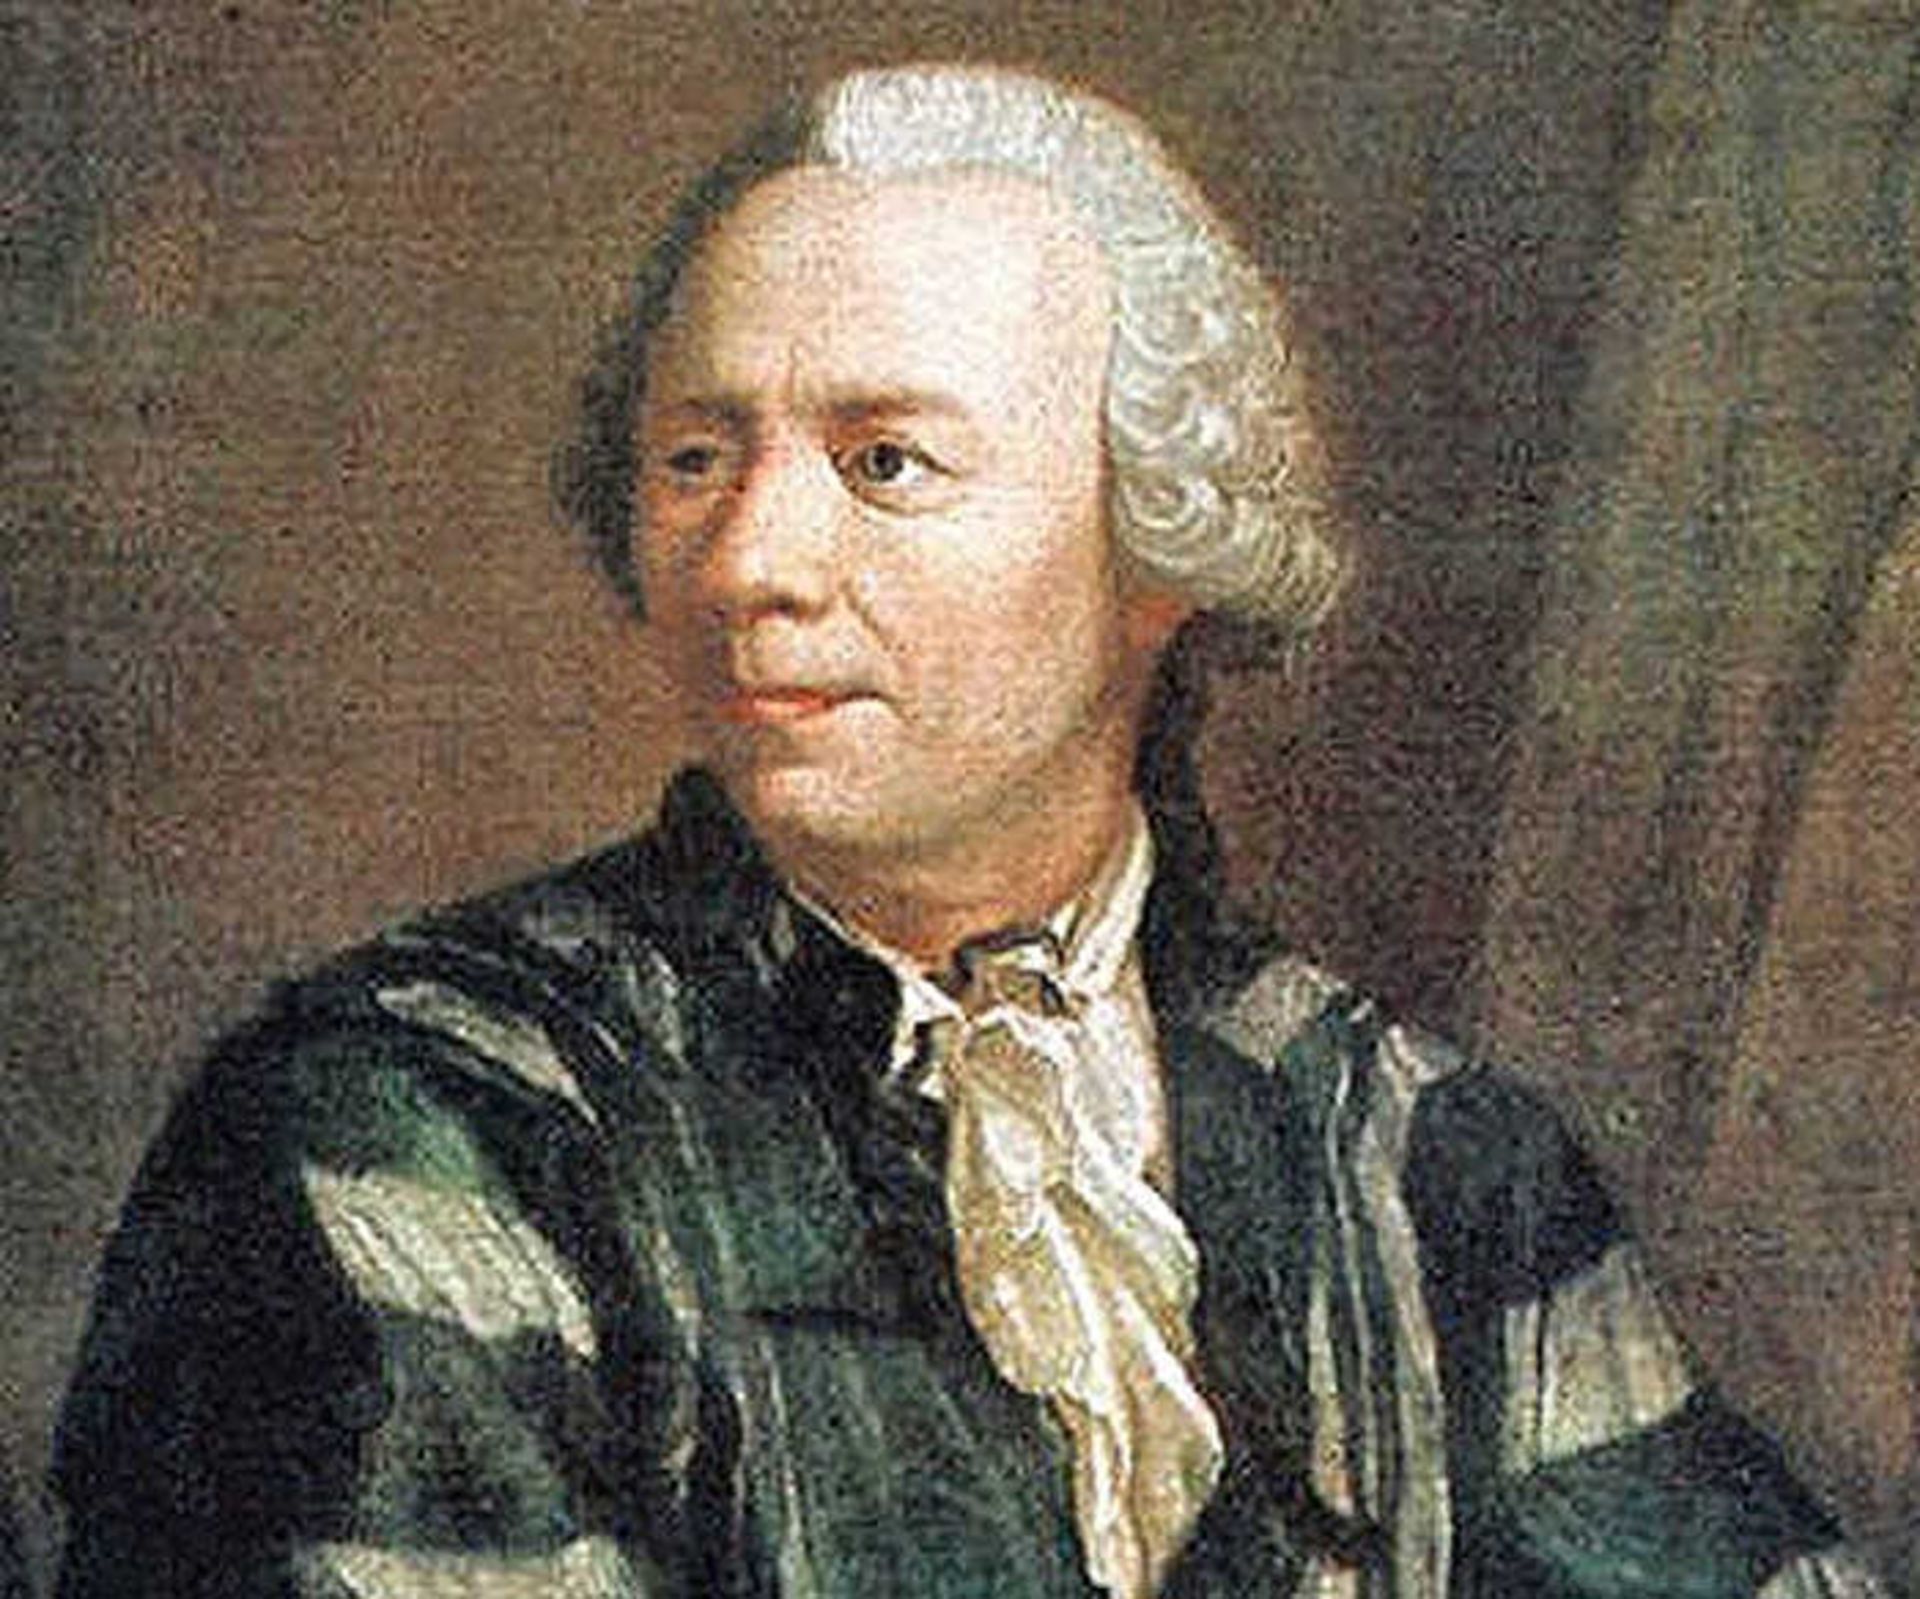 لئونارد اویلر / Leonhard Euler